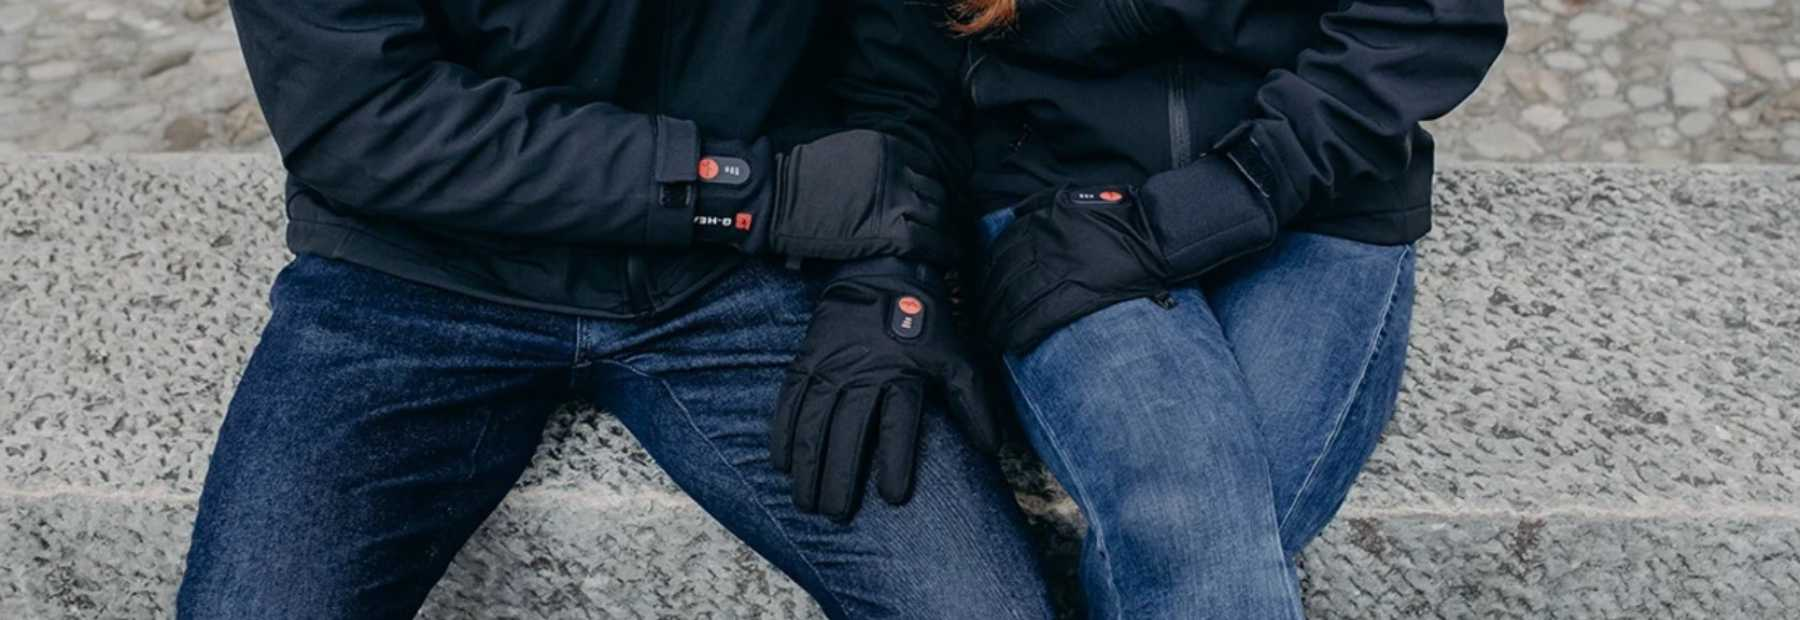 Chaufferette GENERIQUE Gants chauffants unisexes chauffe-mains de gants  chauds pour la randonnée en camping plein air d'hiver - multicolore